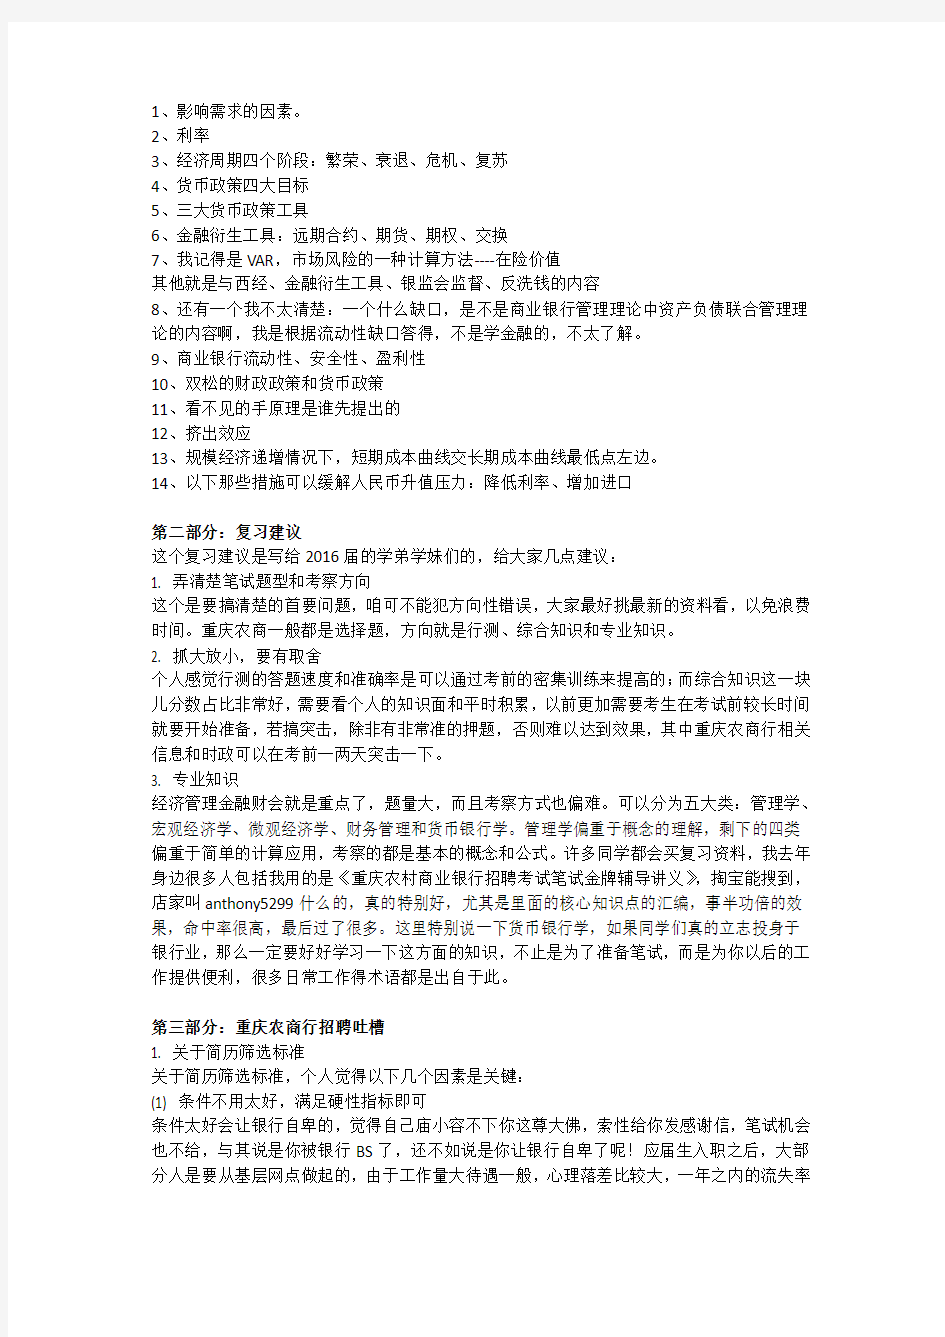 2016年重庆农村商业银行校园招聘考试笔试内容以及历年真题资料下载